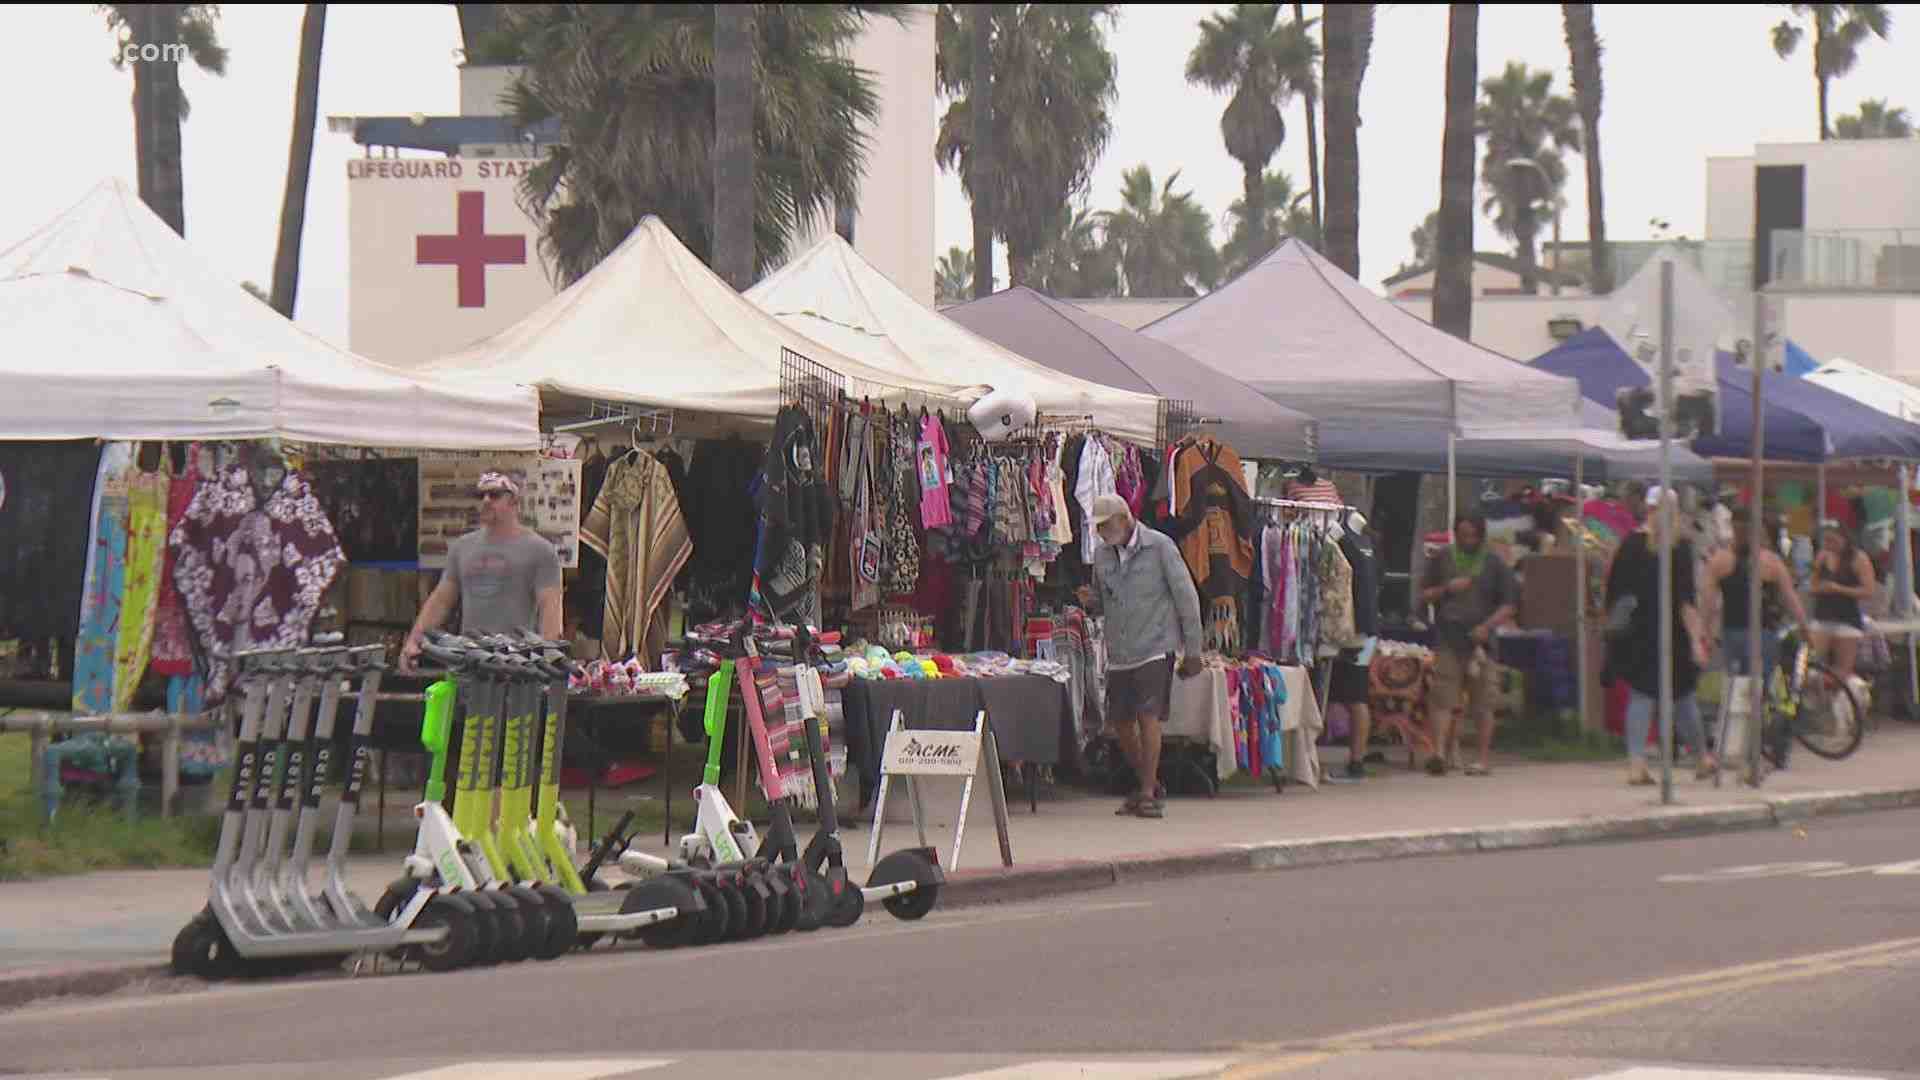 Are street vendors legal in California?